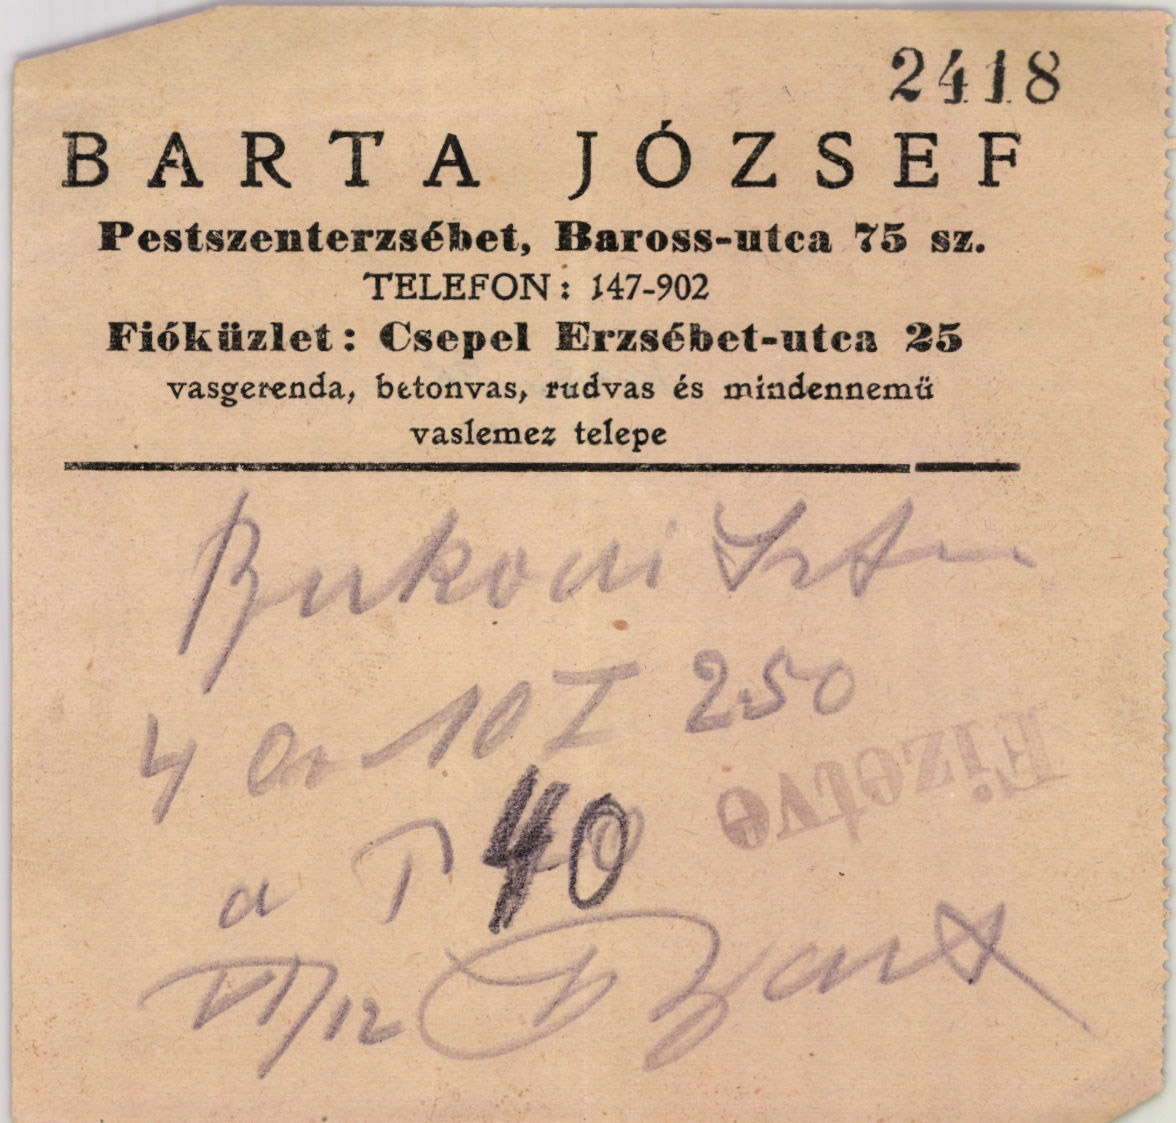 Barta József vasgerenda, betonvas, rudvas és mindennemű vaslemez telepe (Magyar Kereskedelmi és Vendéglátóipari Múzeum CC BY-NC-SA)